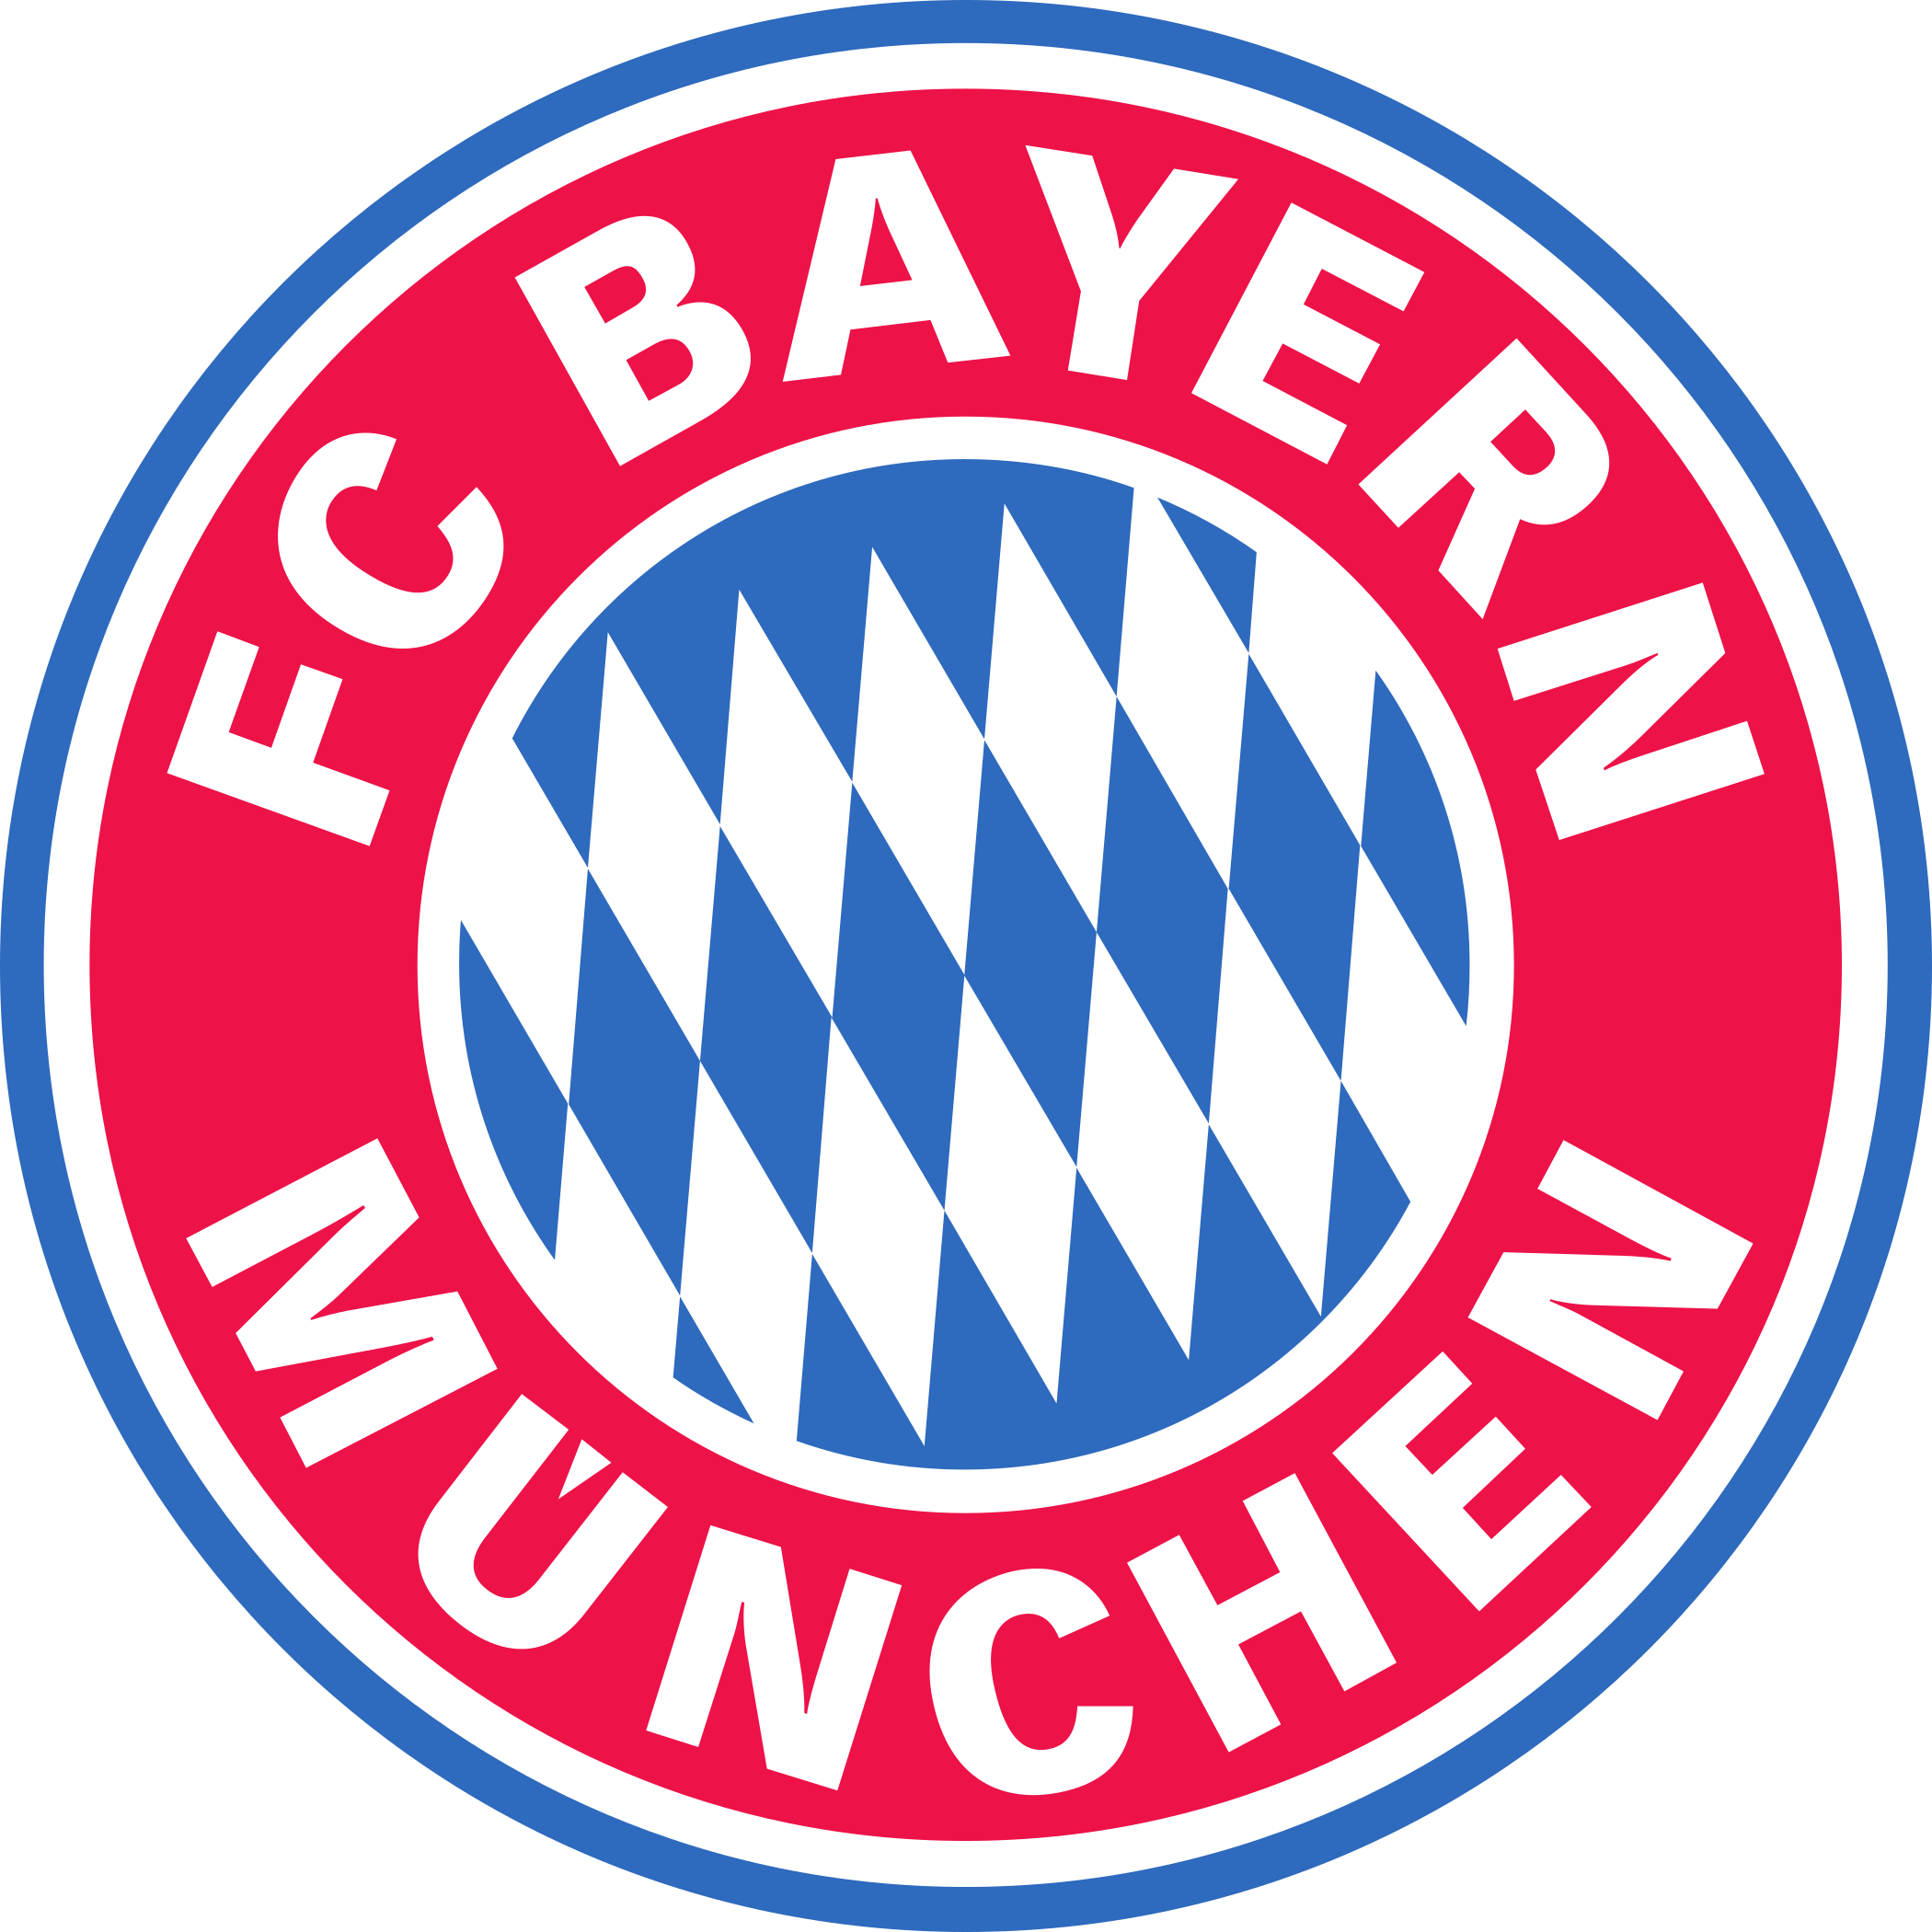 Bayern München Logo – Bayern de Munique Escudo - PNG e Vetor - Download